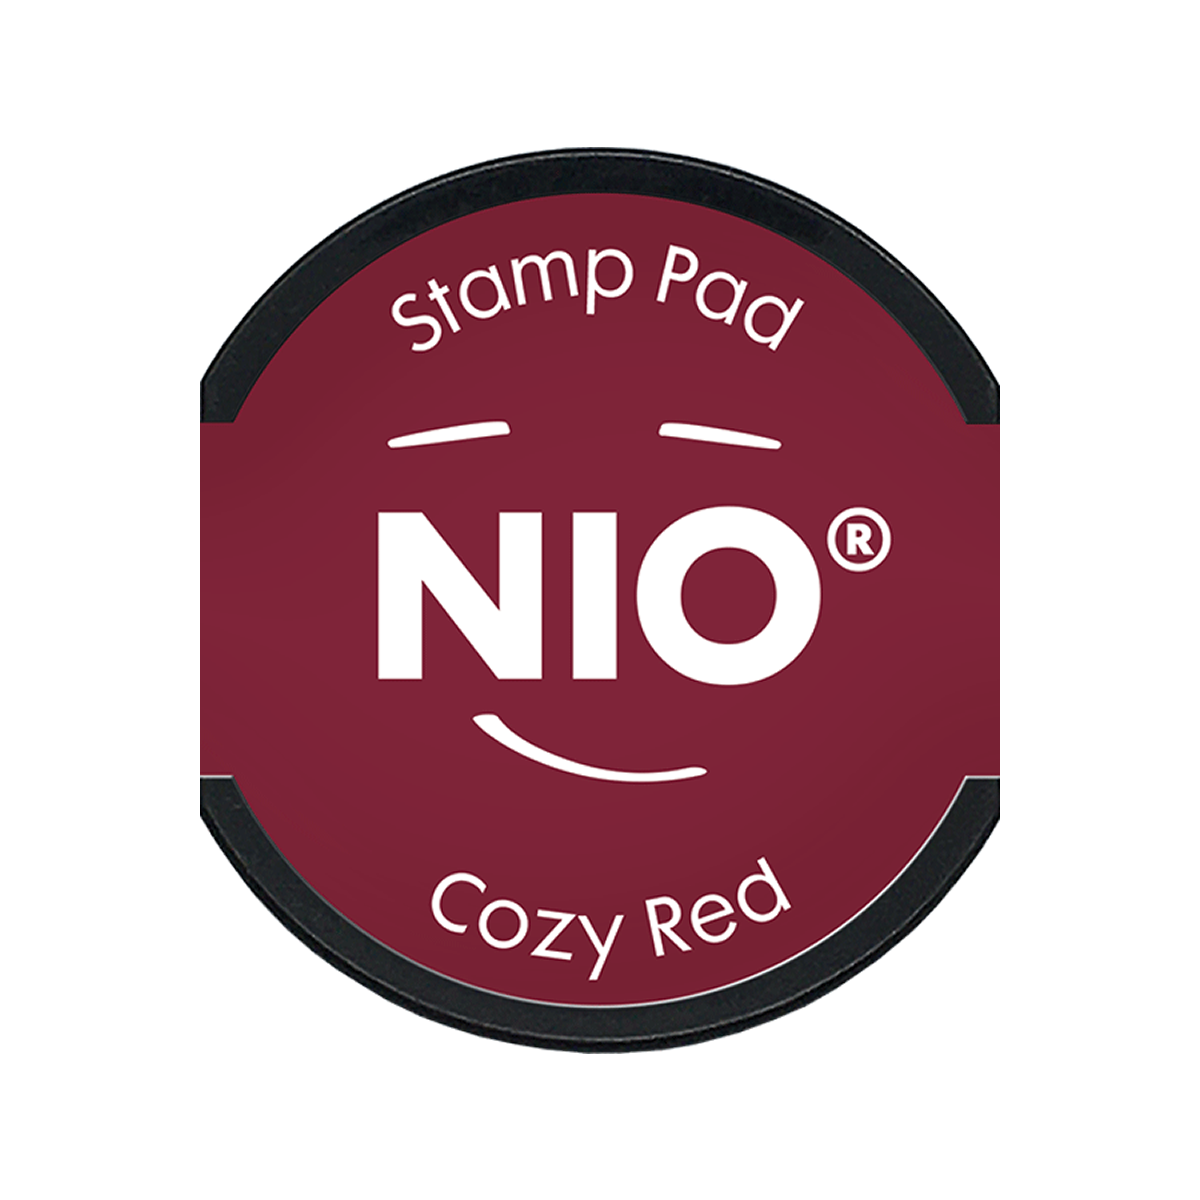 COLOP Arts & Crafts NIO Ταμπόν για Αυτόματη Σφραγίδα Cozy red